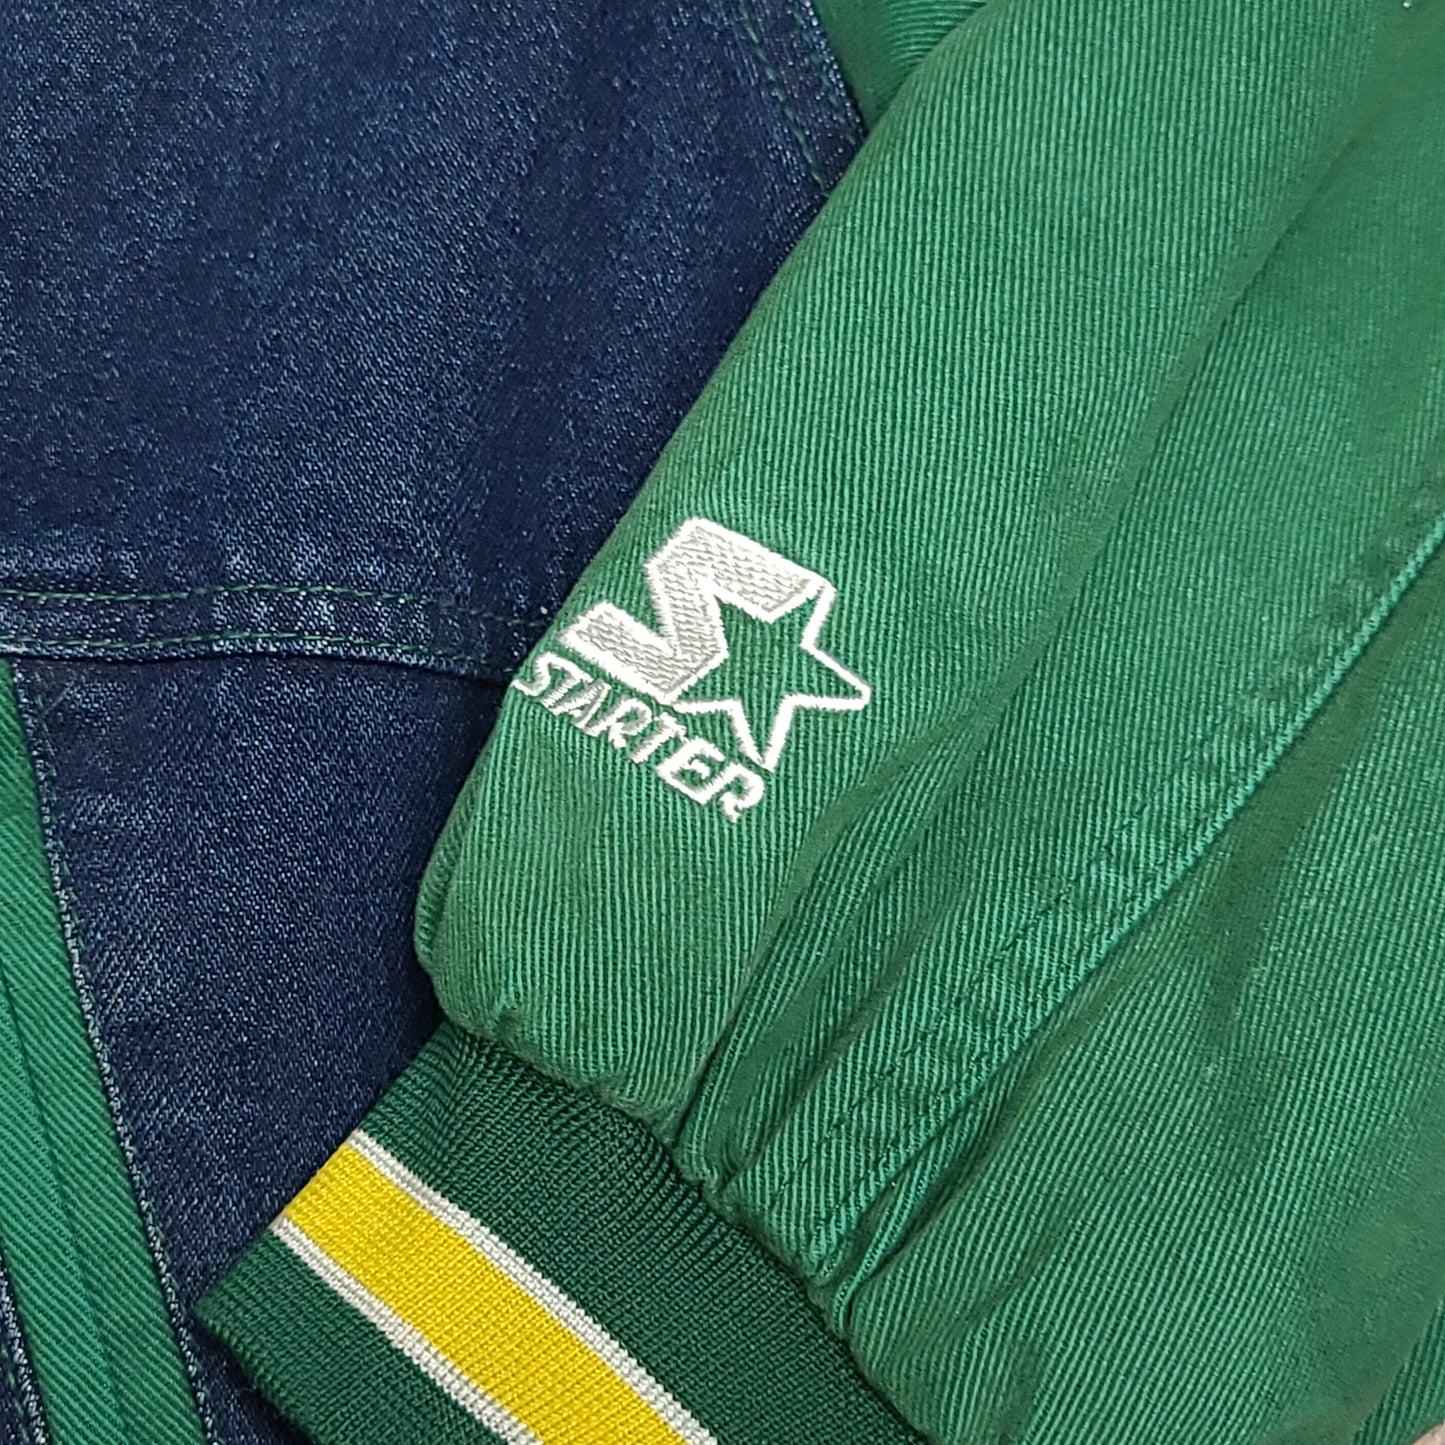 Vintage Seattle Supersonics NBA Denim Color Block Starter Jacket